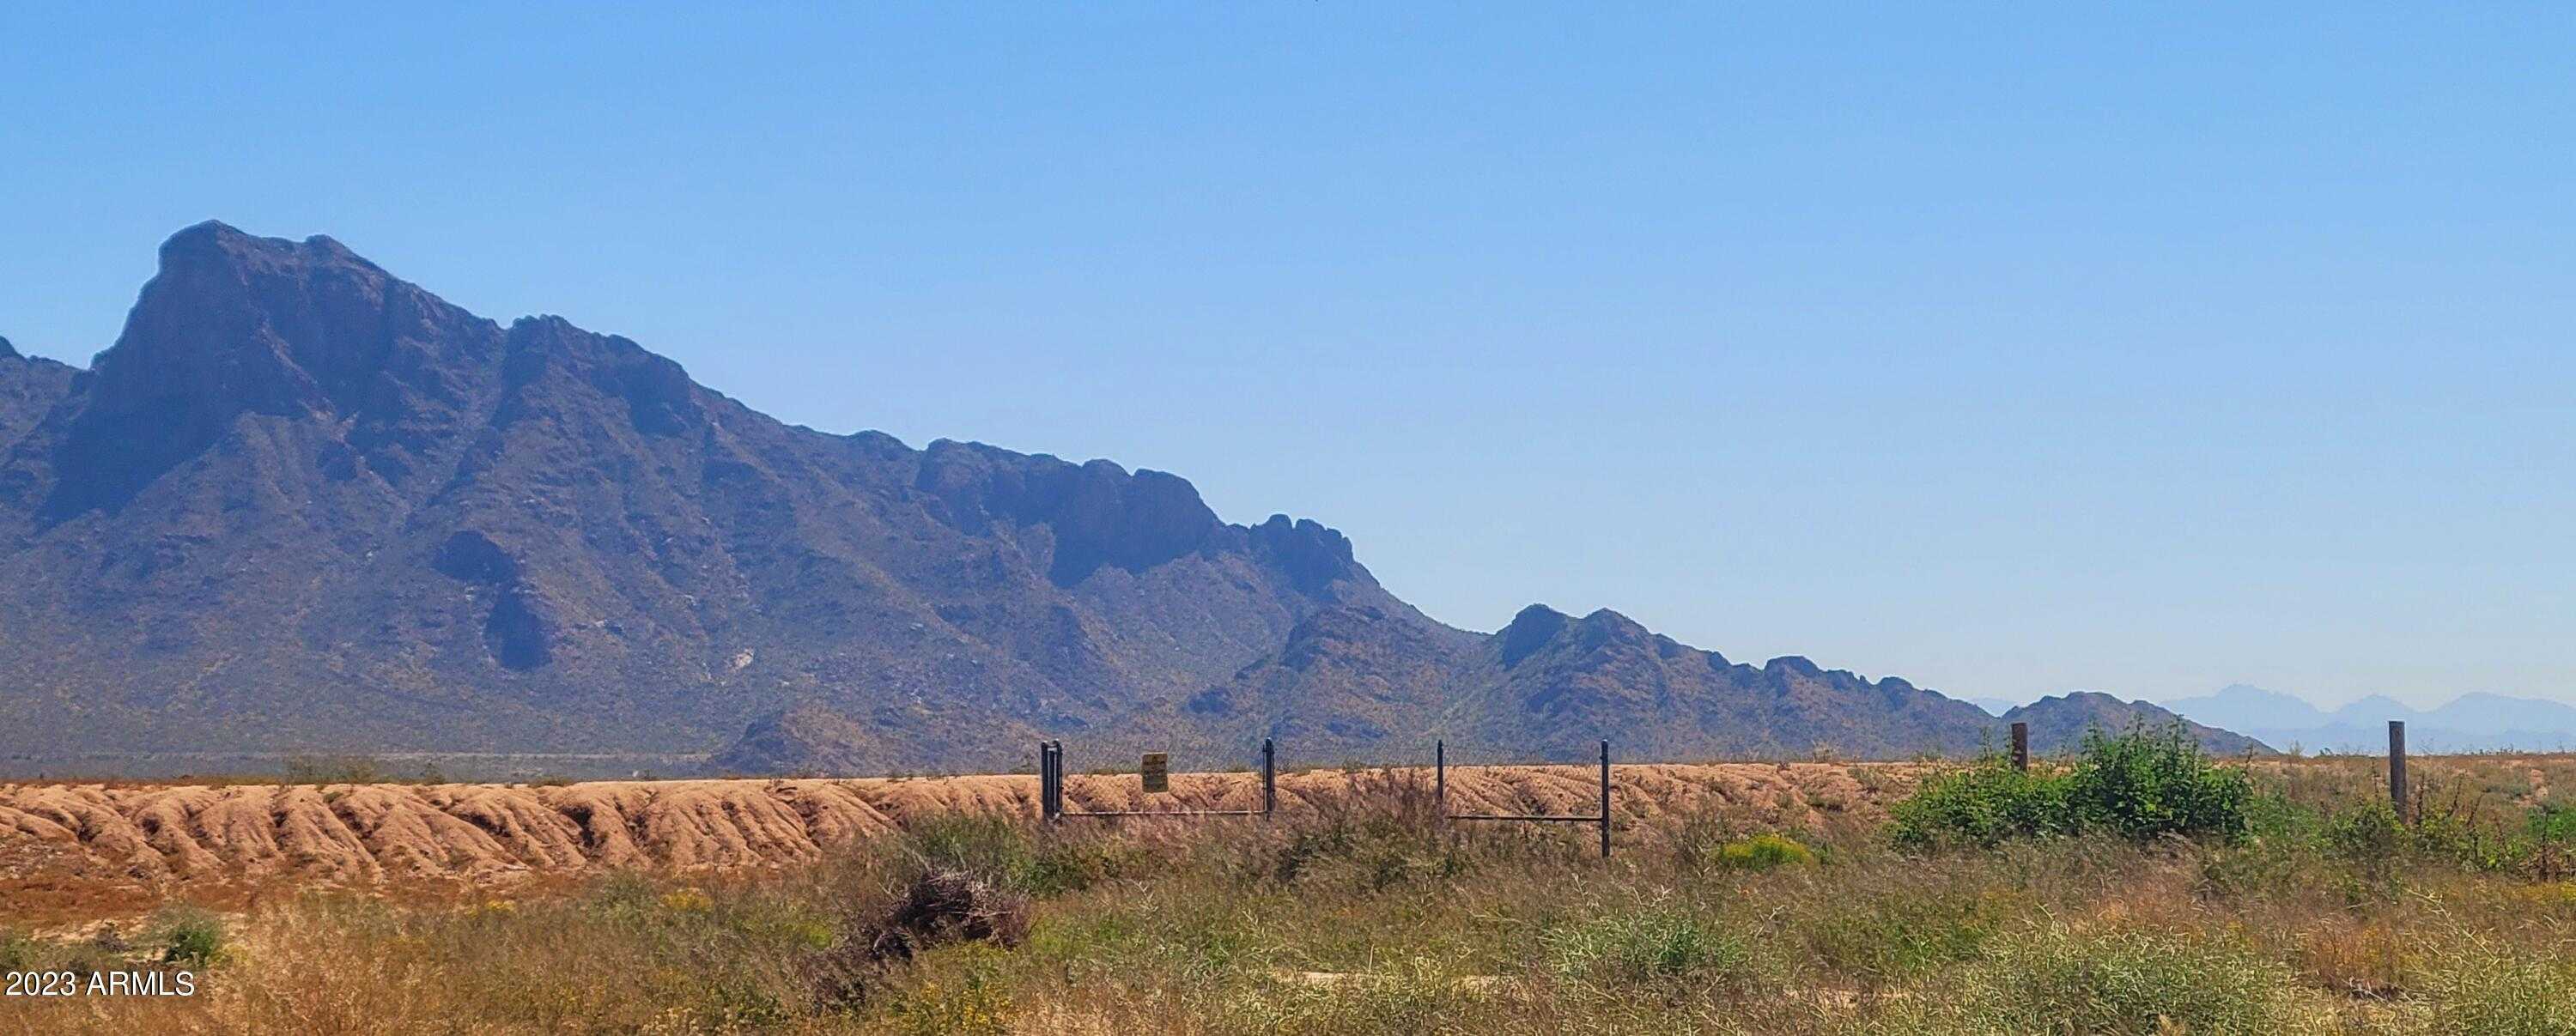 View Picacho, AZ 85141 land